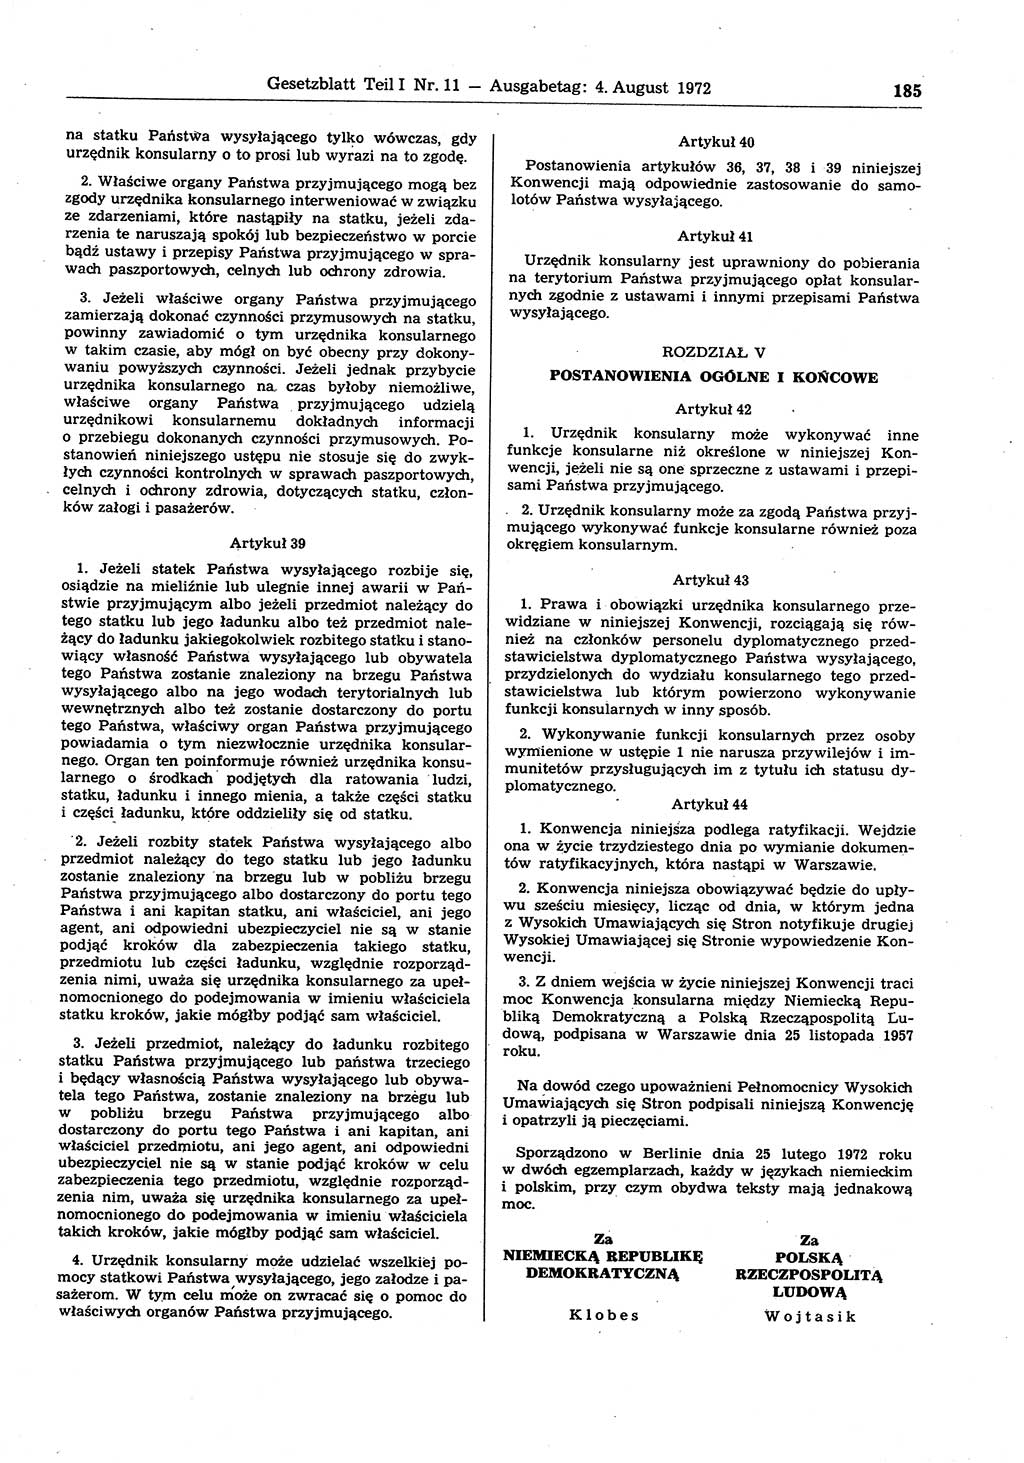 Gesetzblatt (GBl.) der Deutschen Demokratischen Republik (DDR) Teil Ⅰ 1972, Seite 185 (GBl. DDR Ⅰ 1972, S. 185)